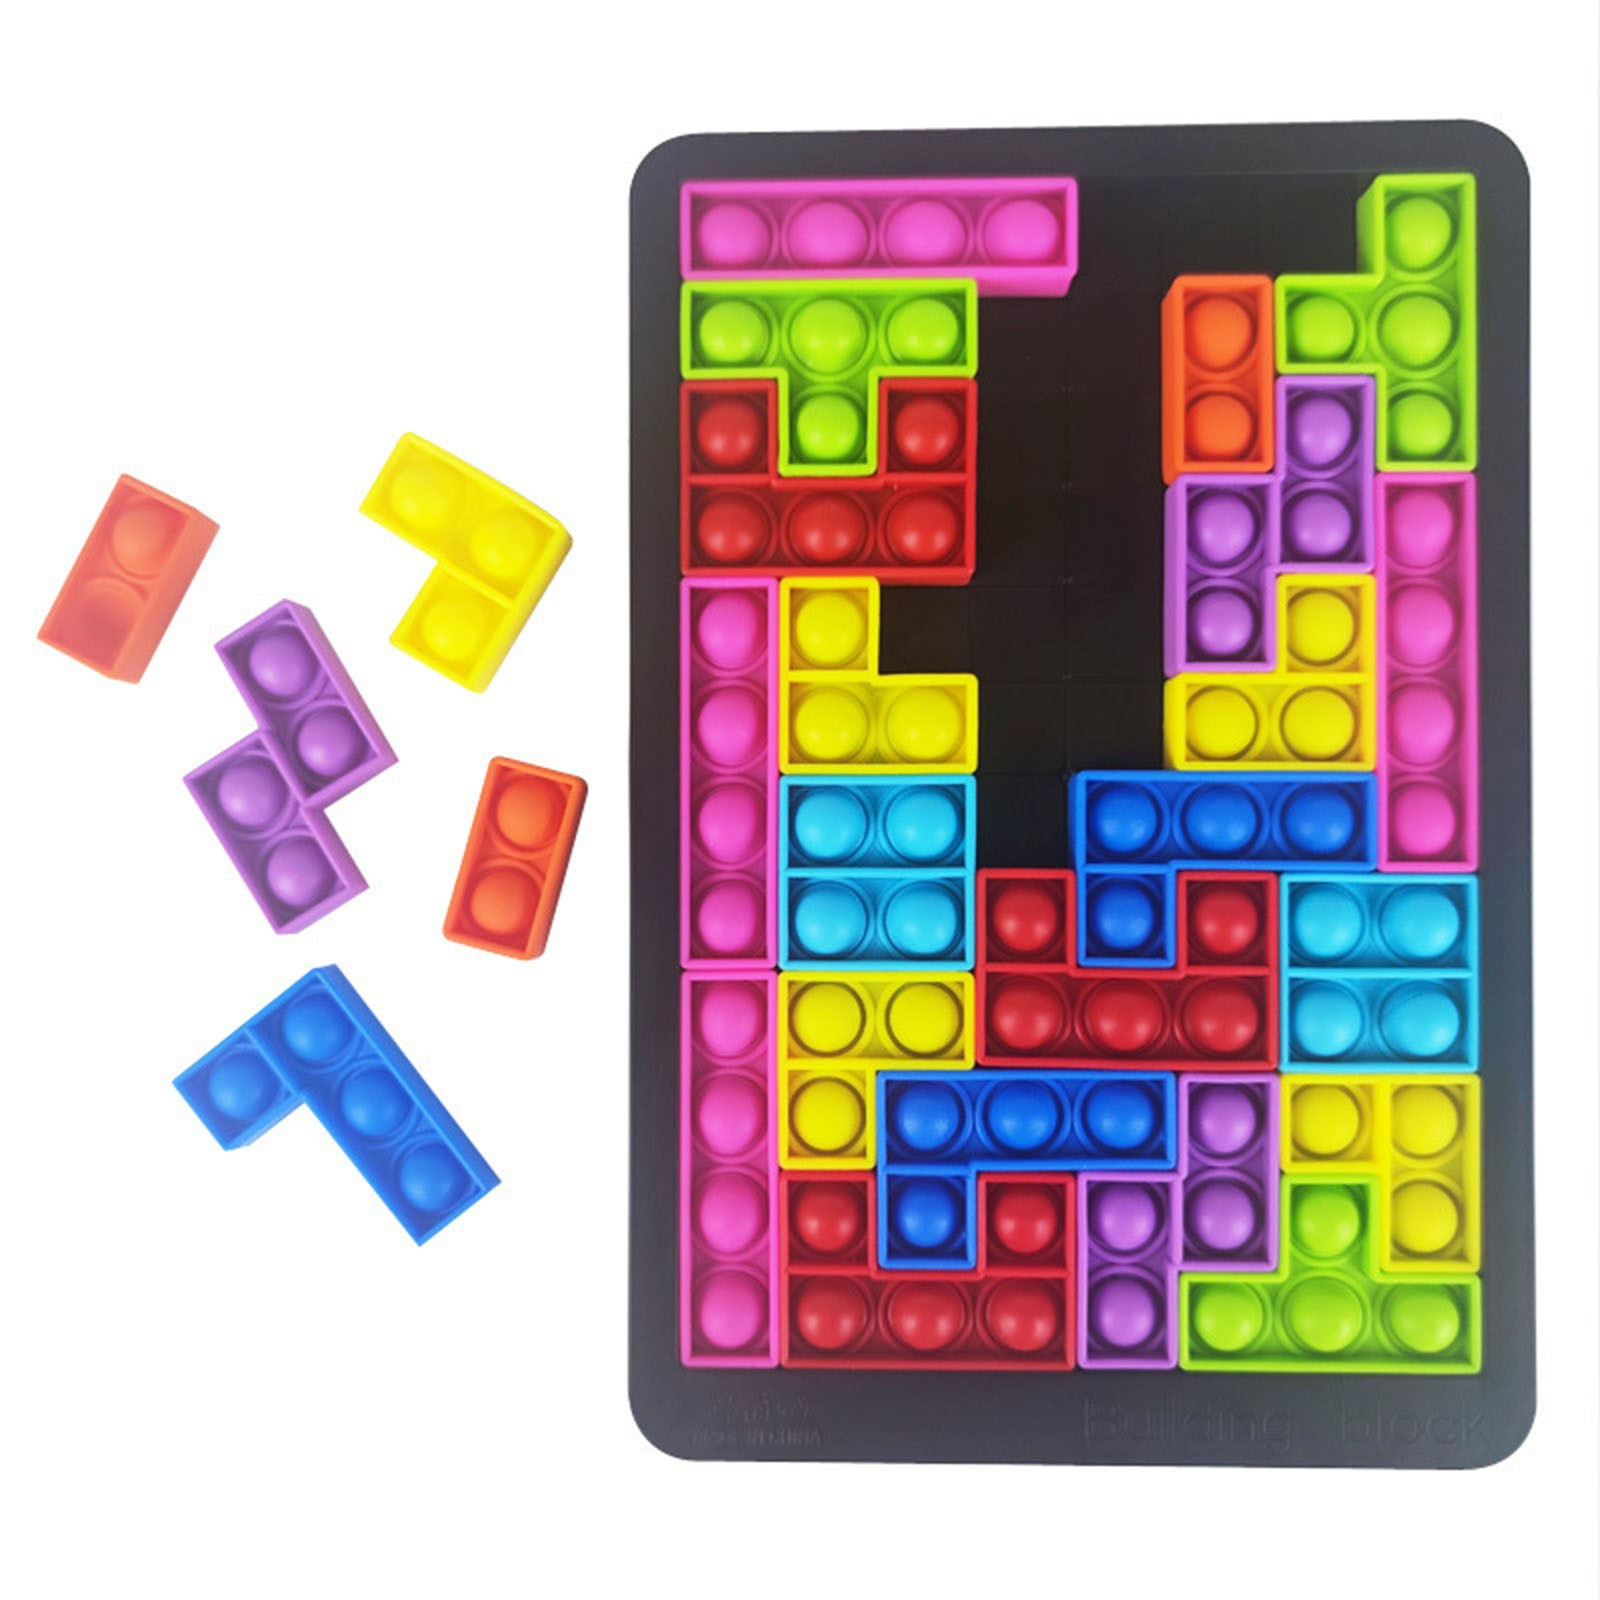 Puzzle tetris de 27 pièces pour enfant, de forme rectangulaire avec de nombreuses pièces colorées